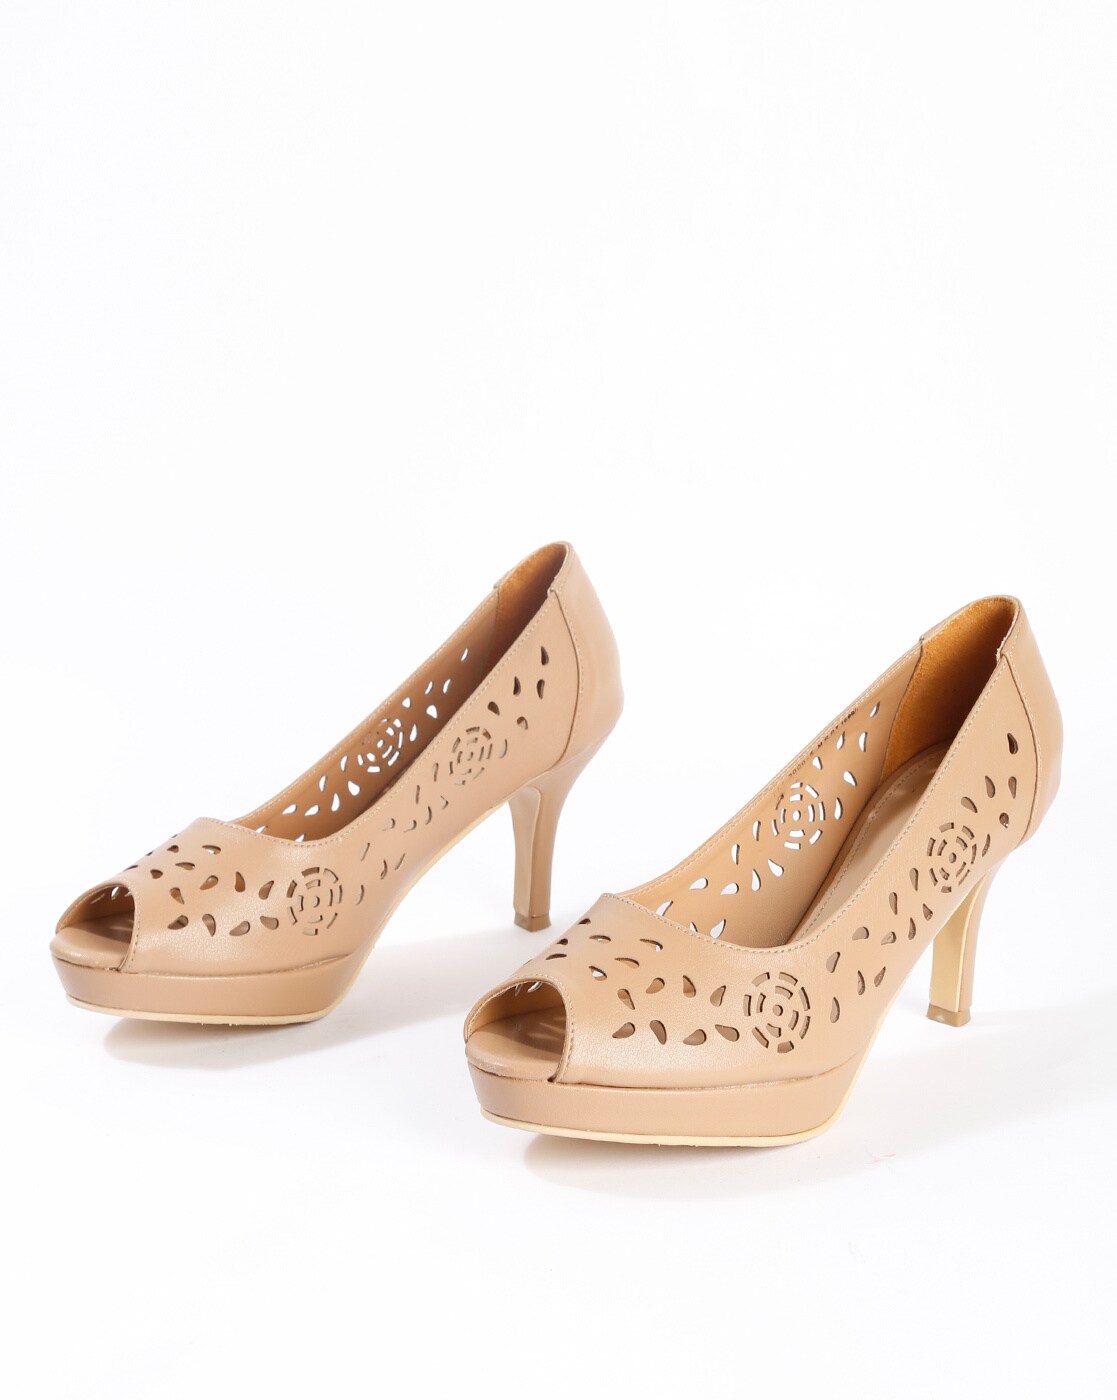 bata cut shoes for womens